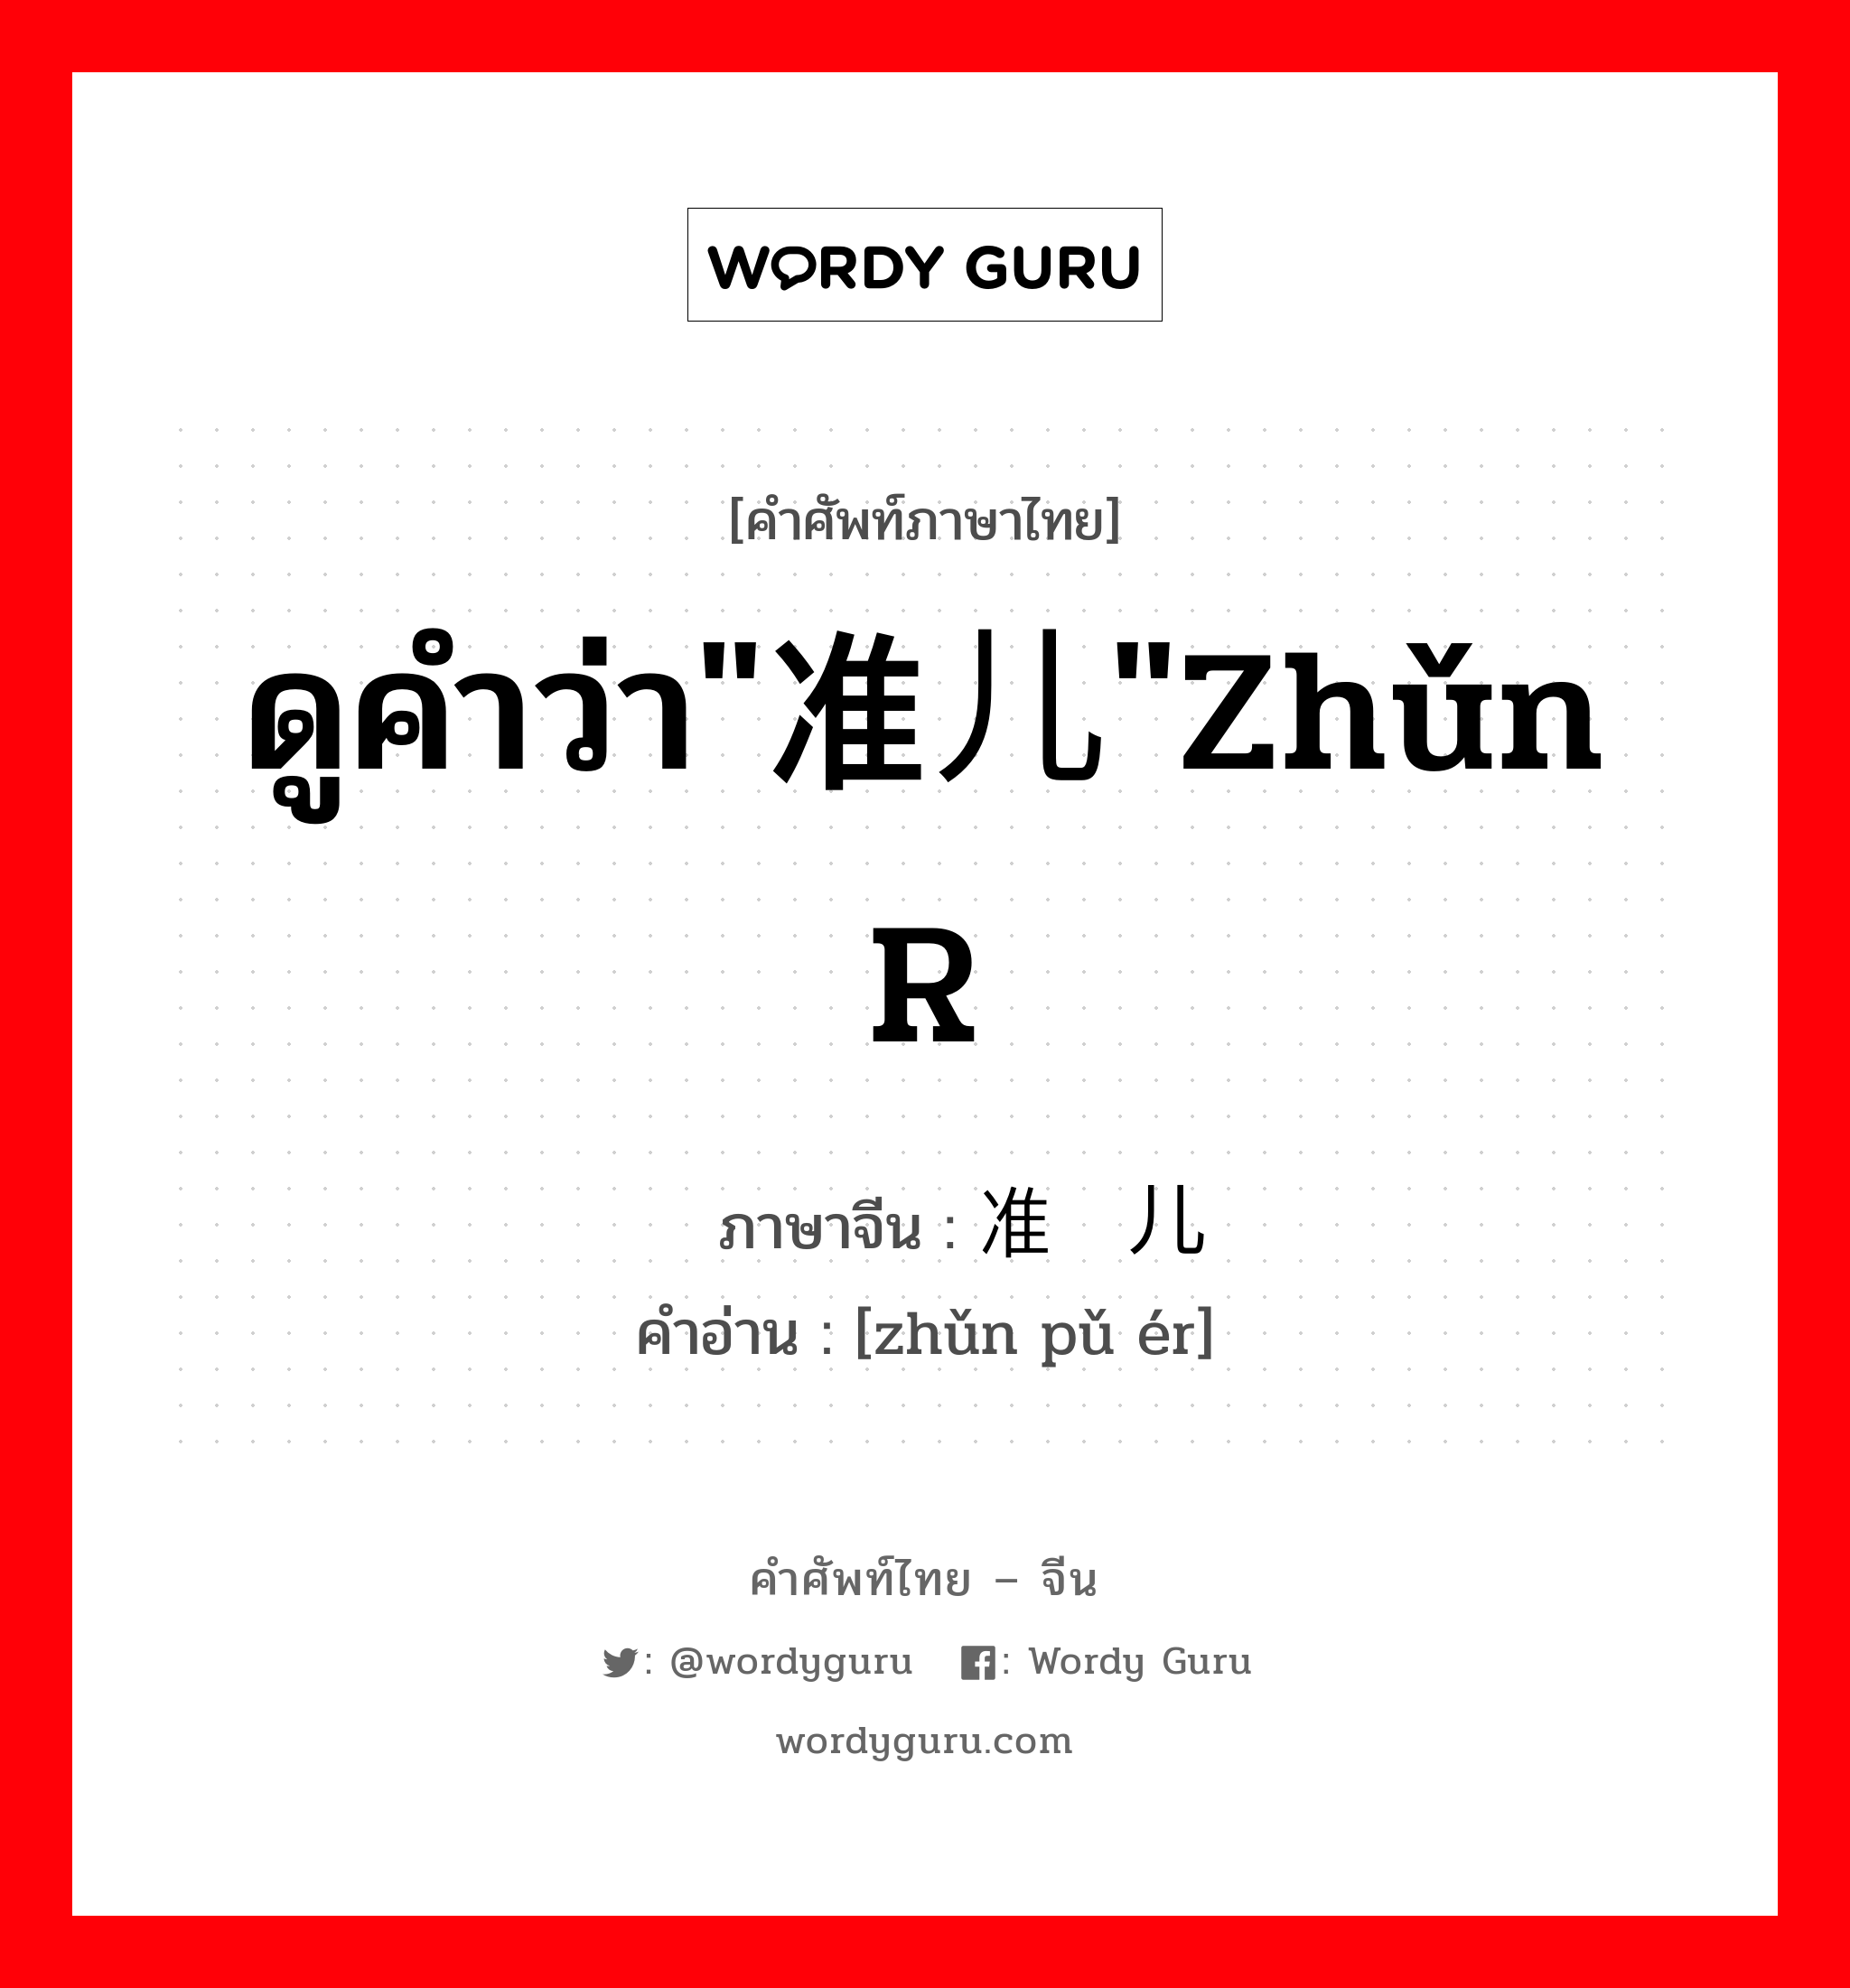 ดูคำว่า"准儿"zhǔn r ภาษาจีนคืออะไร, คำศัพท์ภาษาไทย - จีน ดูคำว่า"准儿"zhǔn r ภาษาจีน 准谱儿 คำอ่าน [zhǔn pǔ ér]